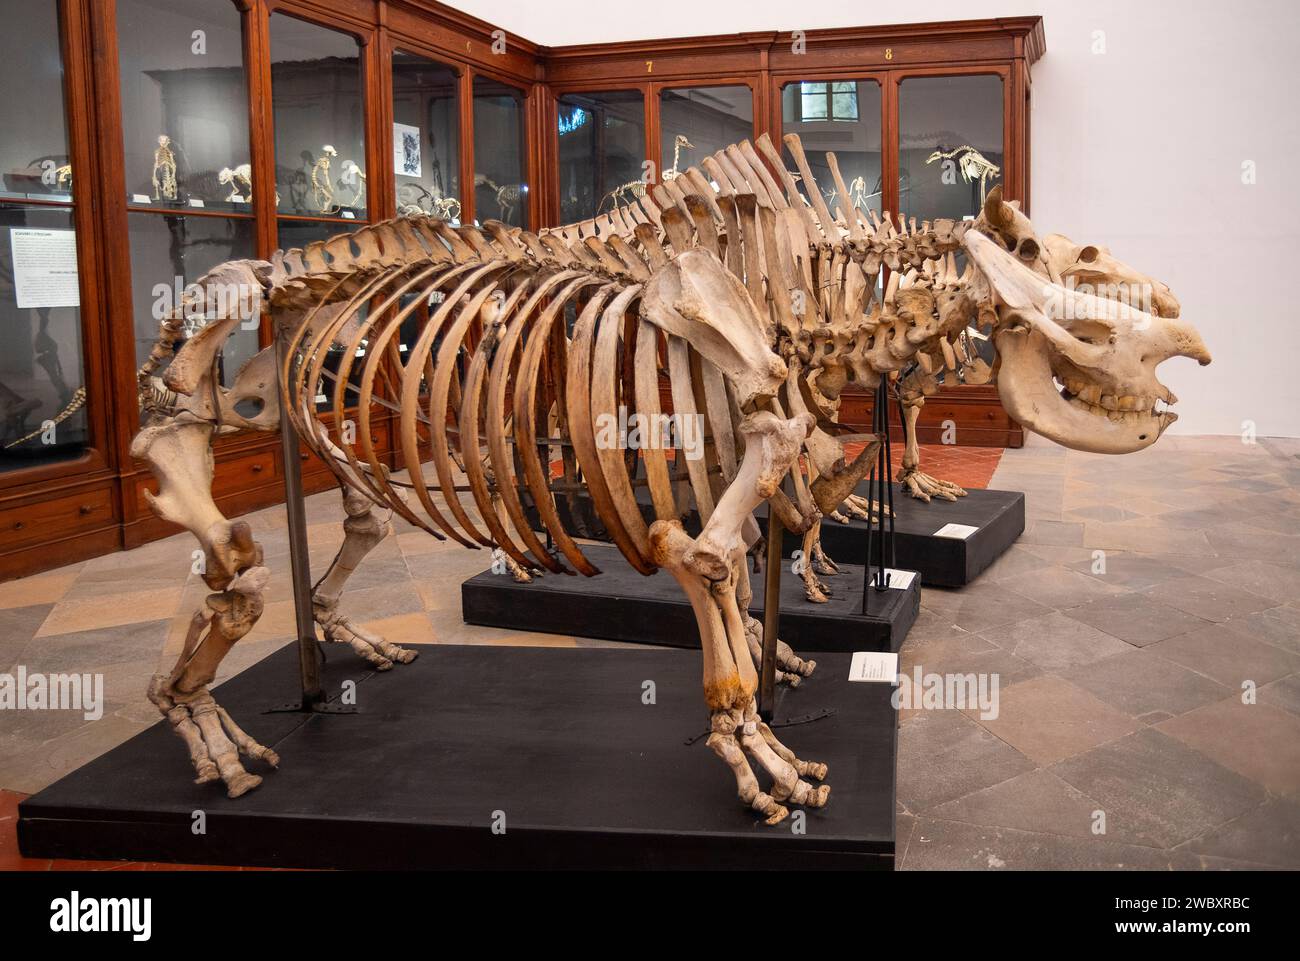 Italien Piemont Turin Regionalmuseum für Naturwissenschaften - Skelett des Schwarzen Nashorns . Diceros bicornis von Congo Credit: Realy Easy Star/Alamy Live News Stockfoto